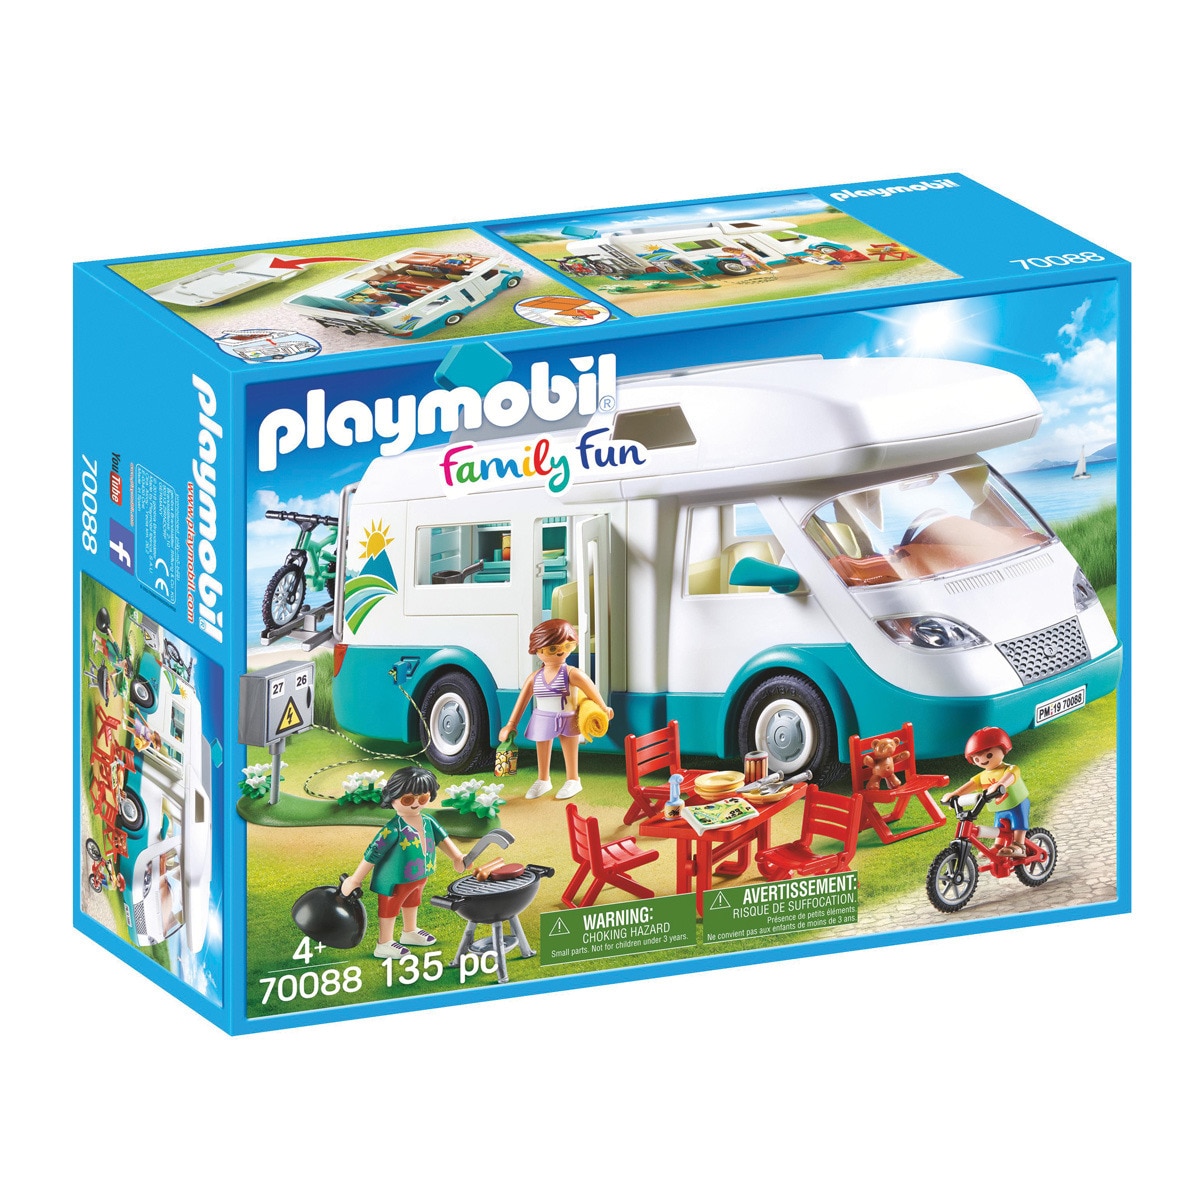 Playmobil - Caravana De Verano Family Fun